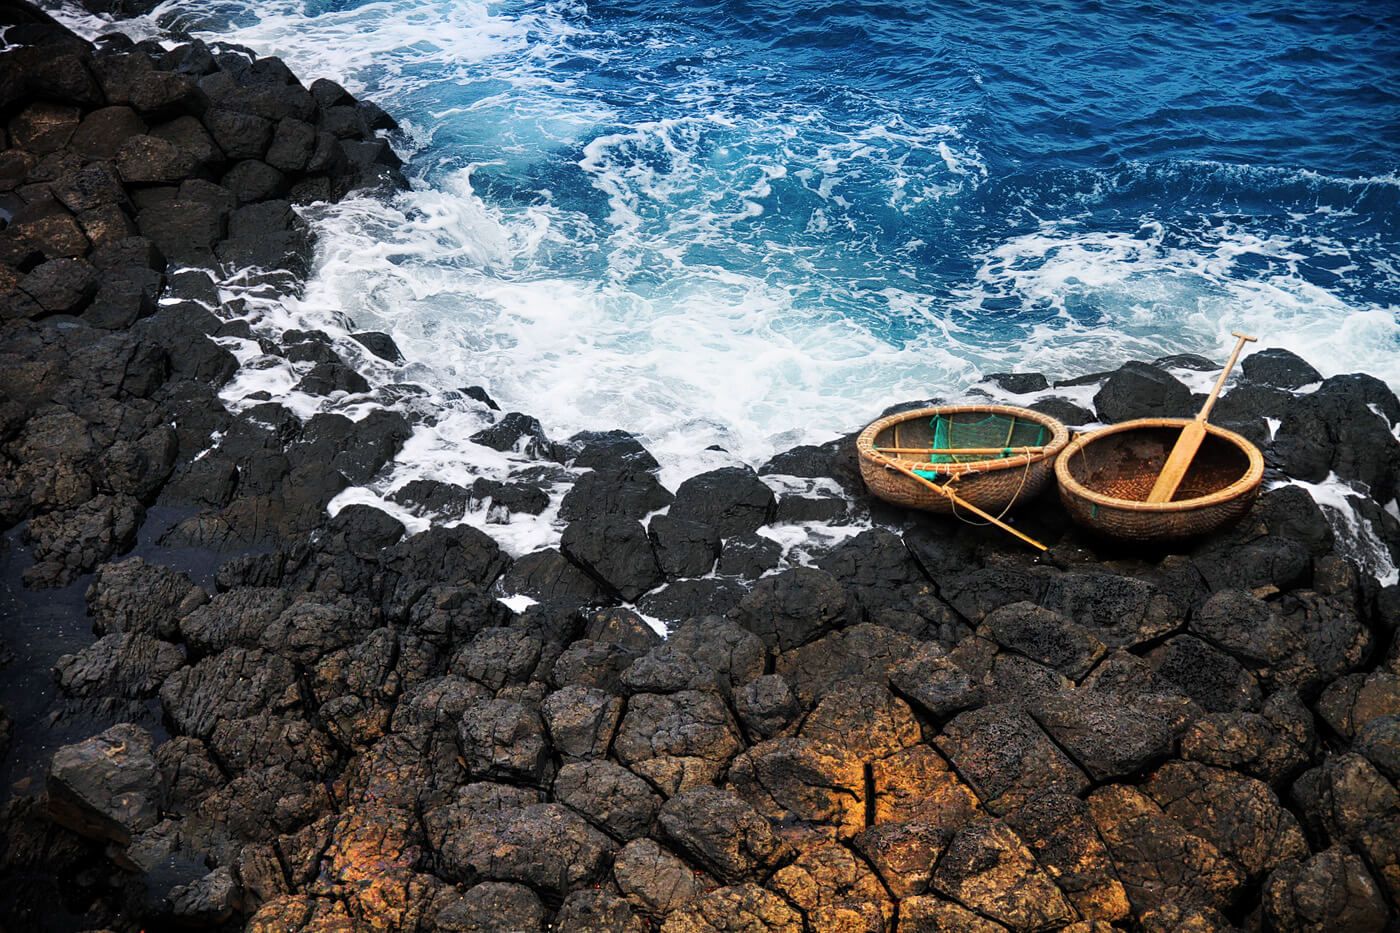 Đến nơi đây, các bạn sẽ bắt gặp những chiếc thuyền thúng nằm nghiêng mình trên những phiến đá như hình ảnh con thuyền mãi ở bến chờ biển đi xa sẽ về. (ảnh: internet) 